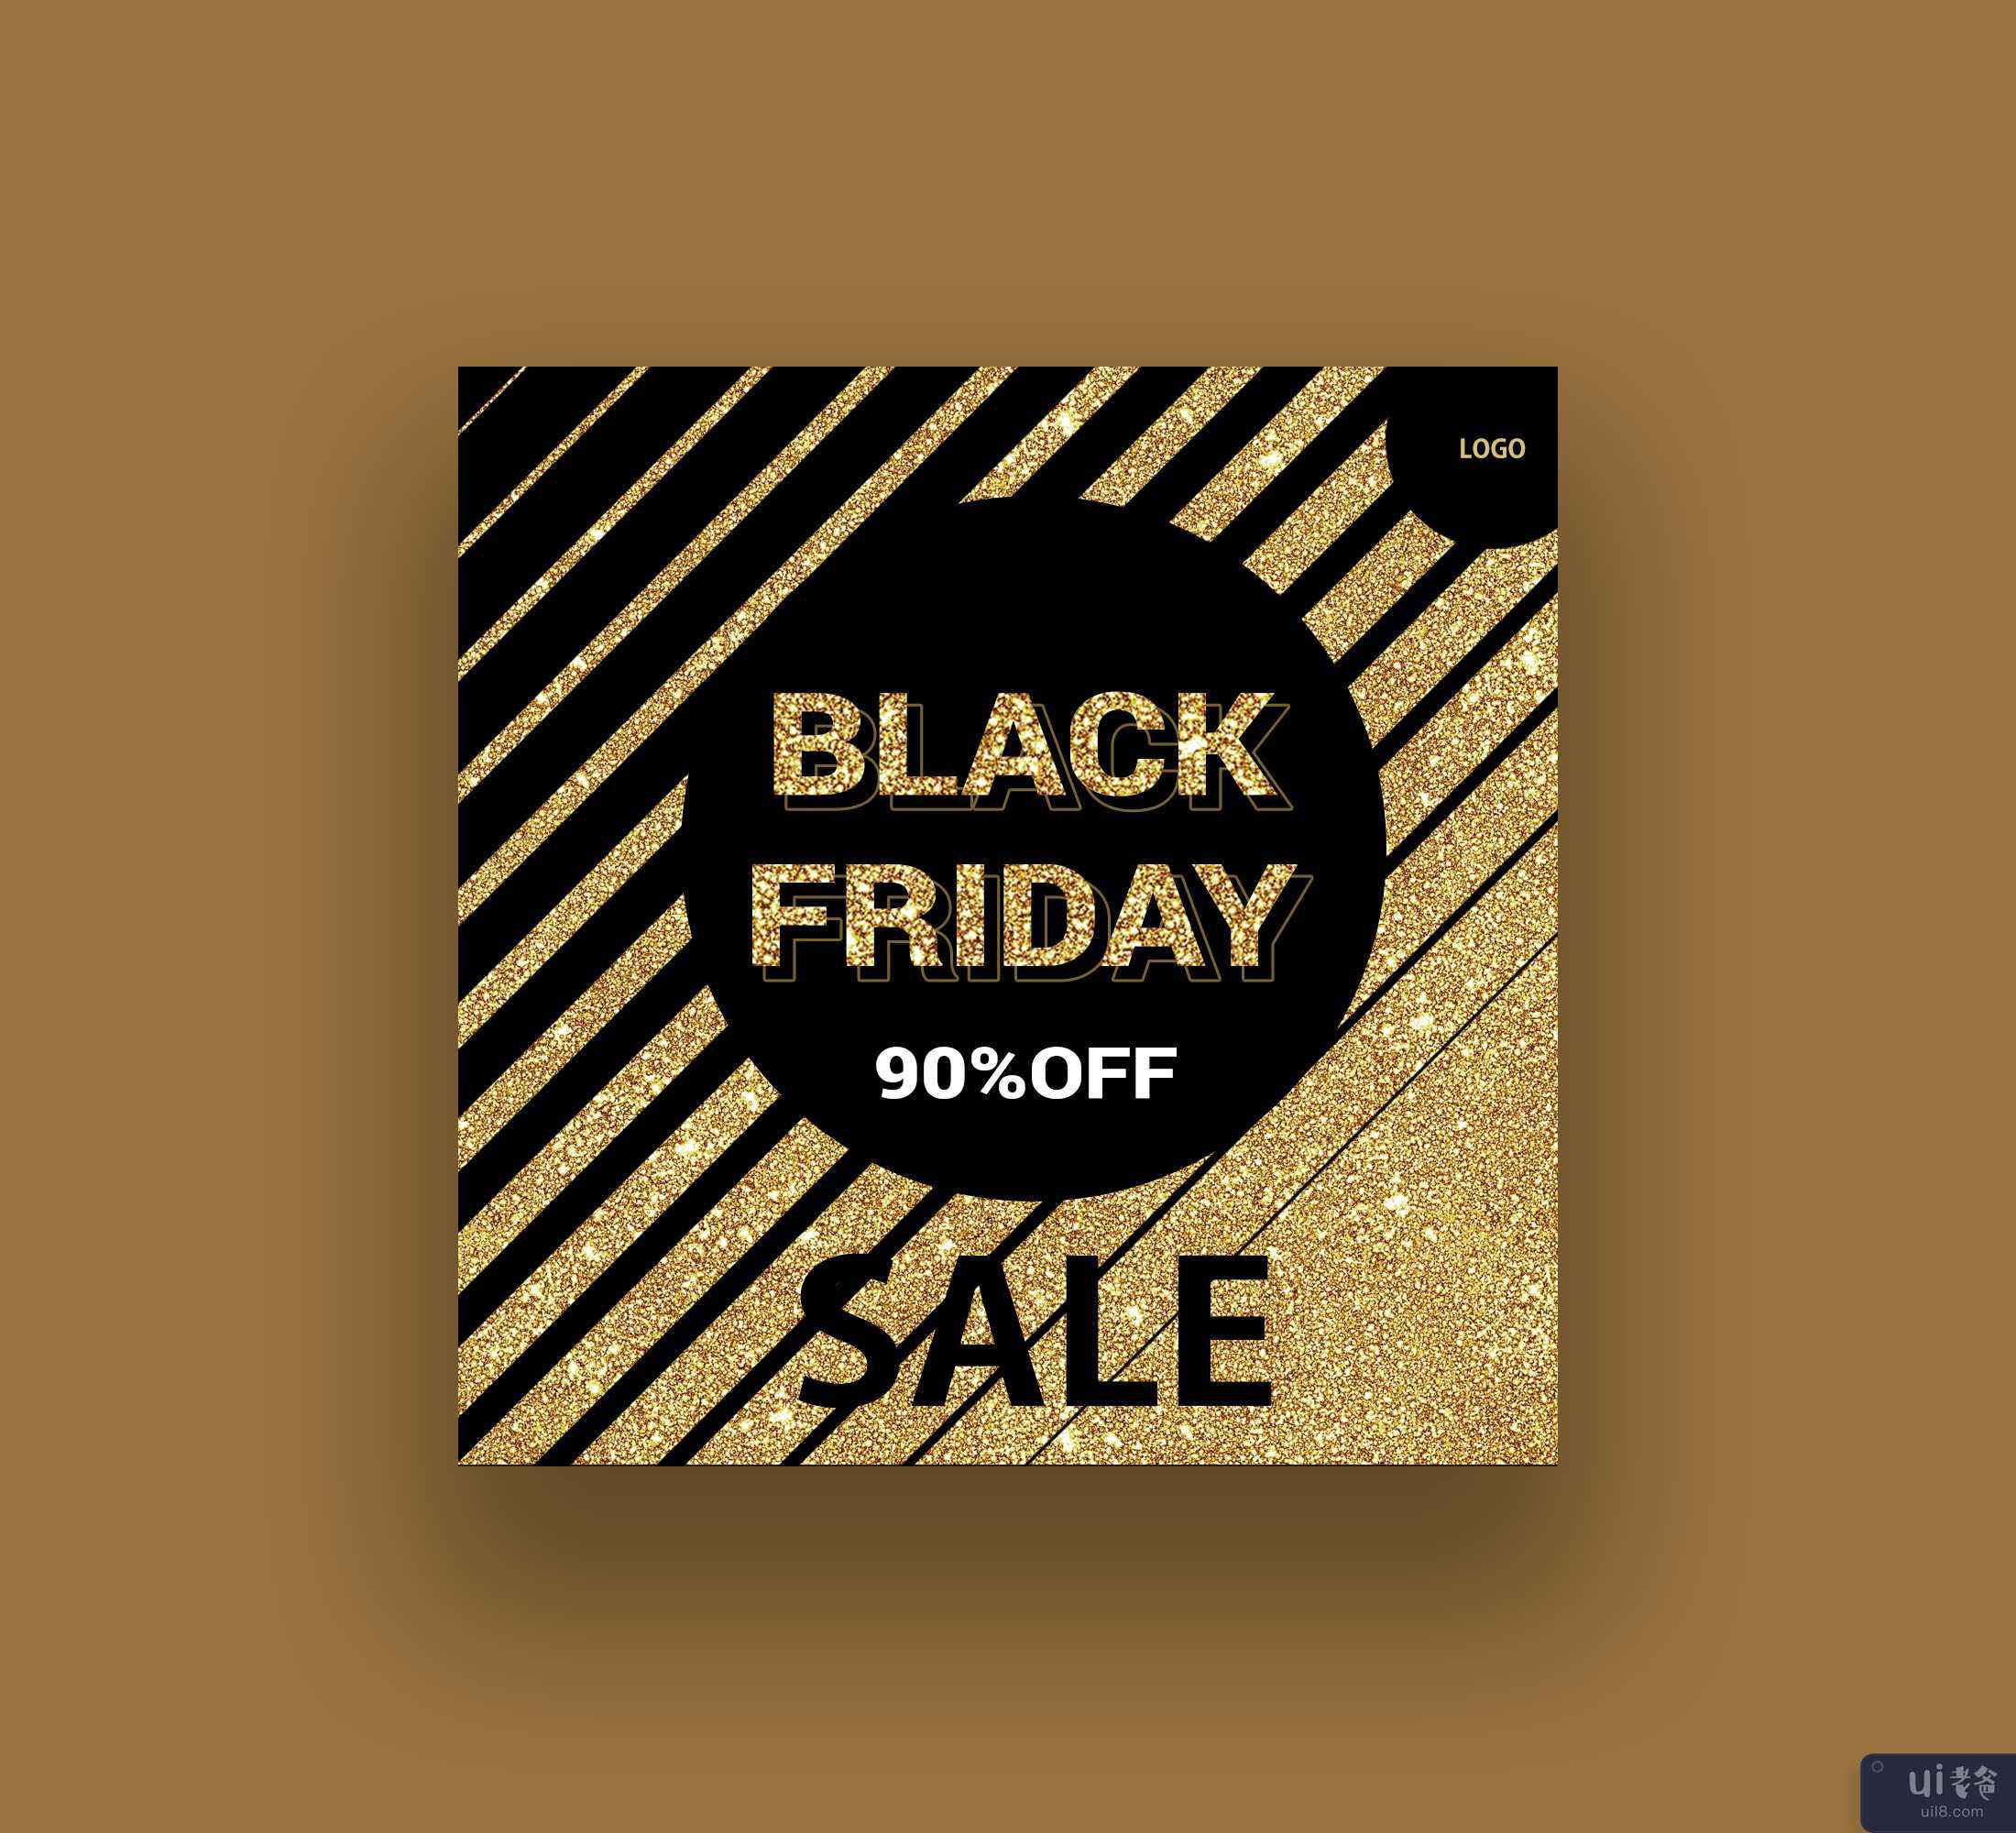 黑色星期五特卖(black friday sale offers)插图